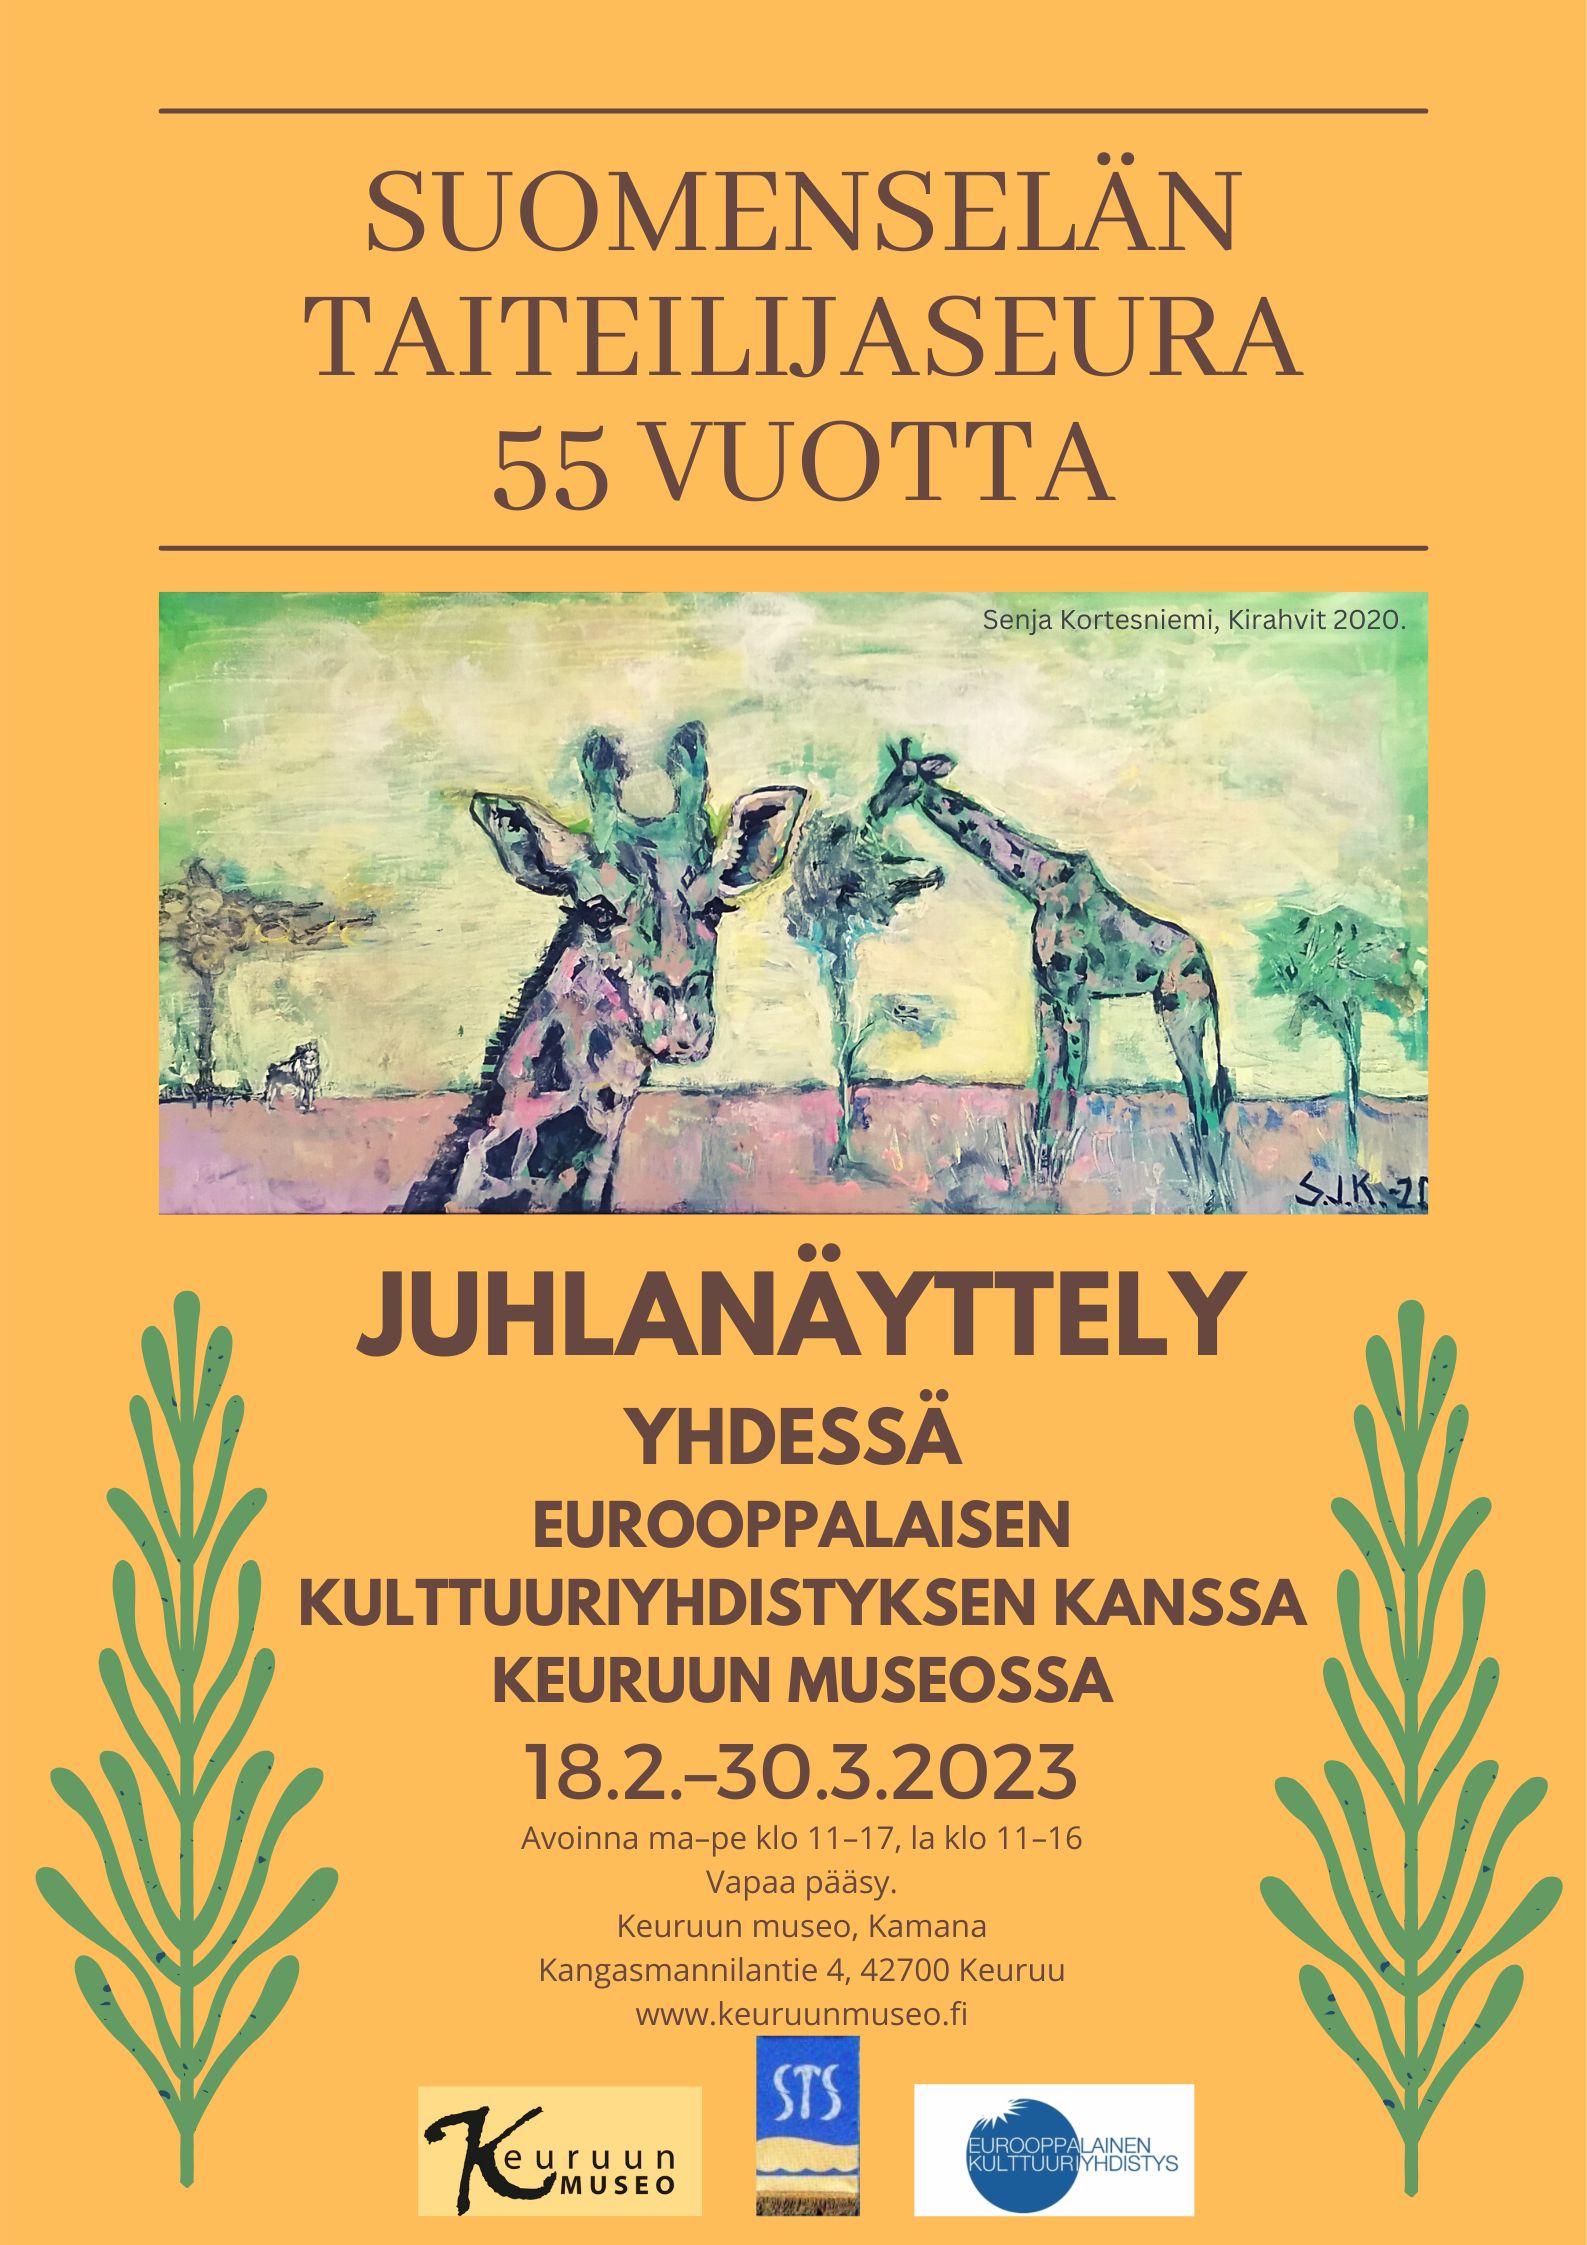 Juhlanäyttely Suomenselän Taiteilijaseura 55 vuotta